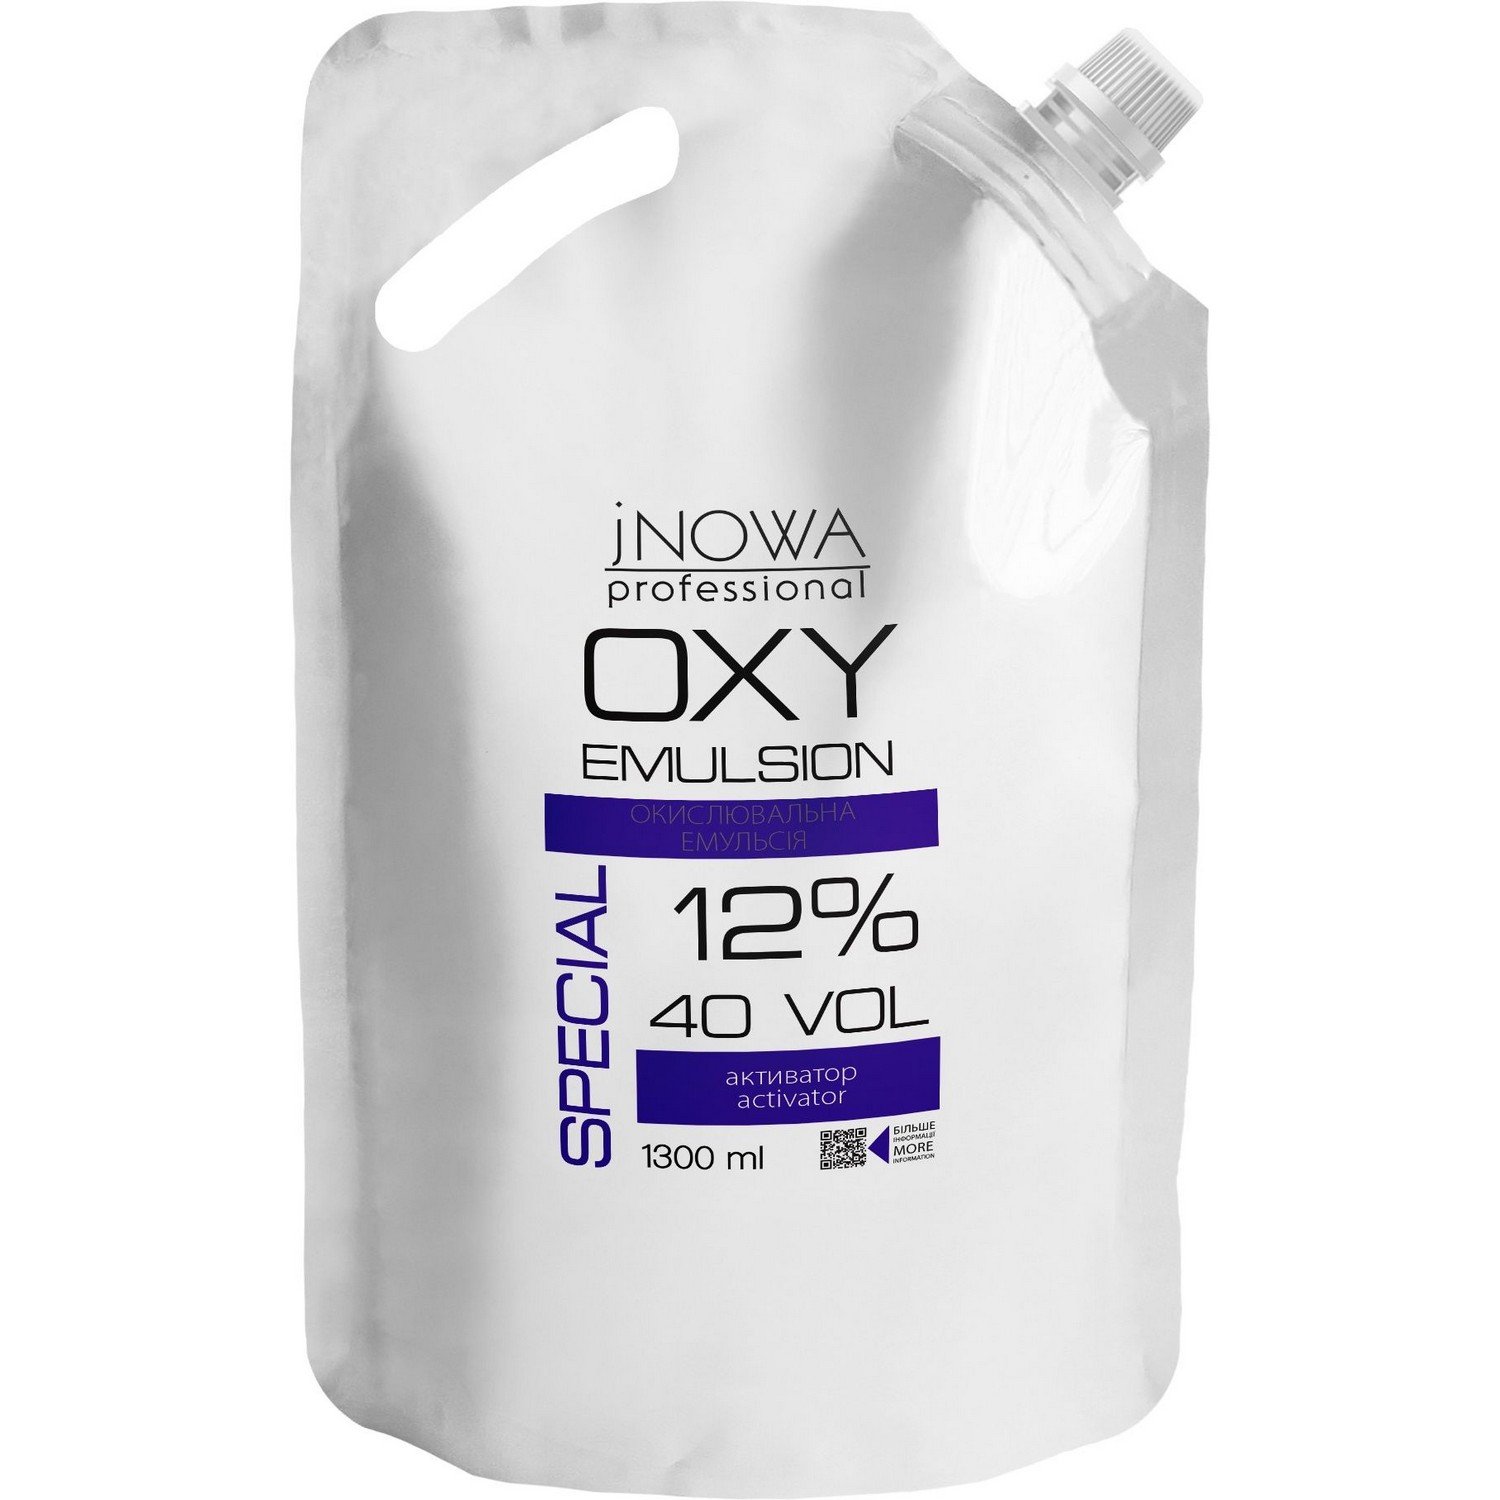 Окислительная эмульсия jNOWA Professional Special OXY 12%, 40 vol, 1300 мл - фото 1